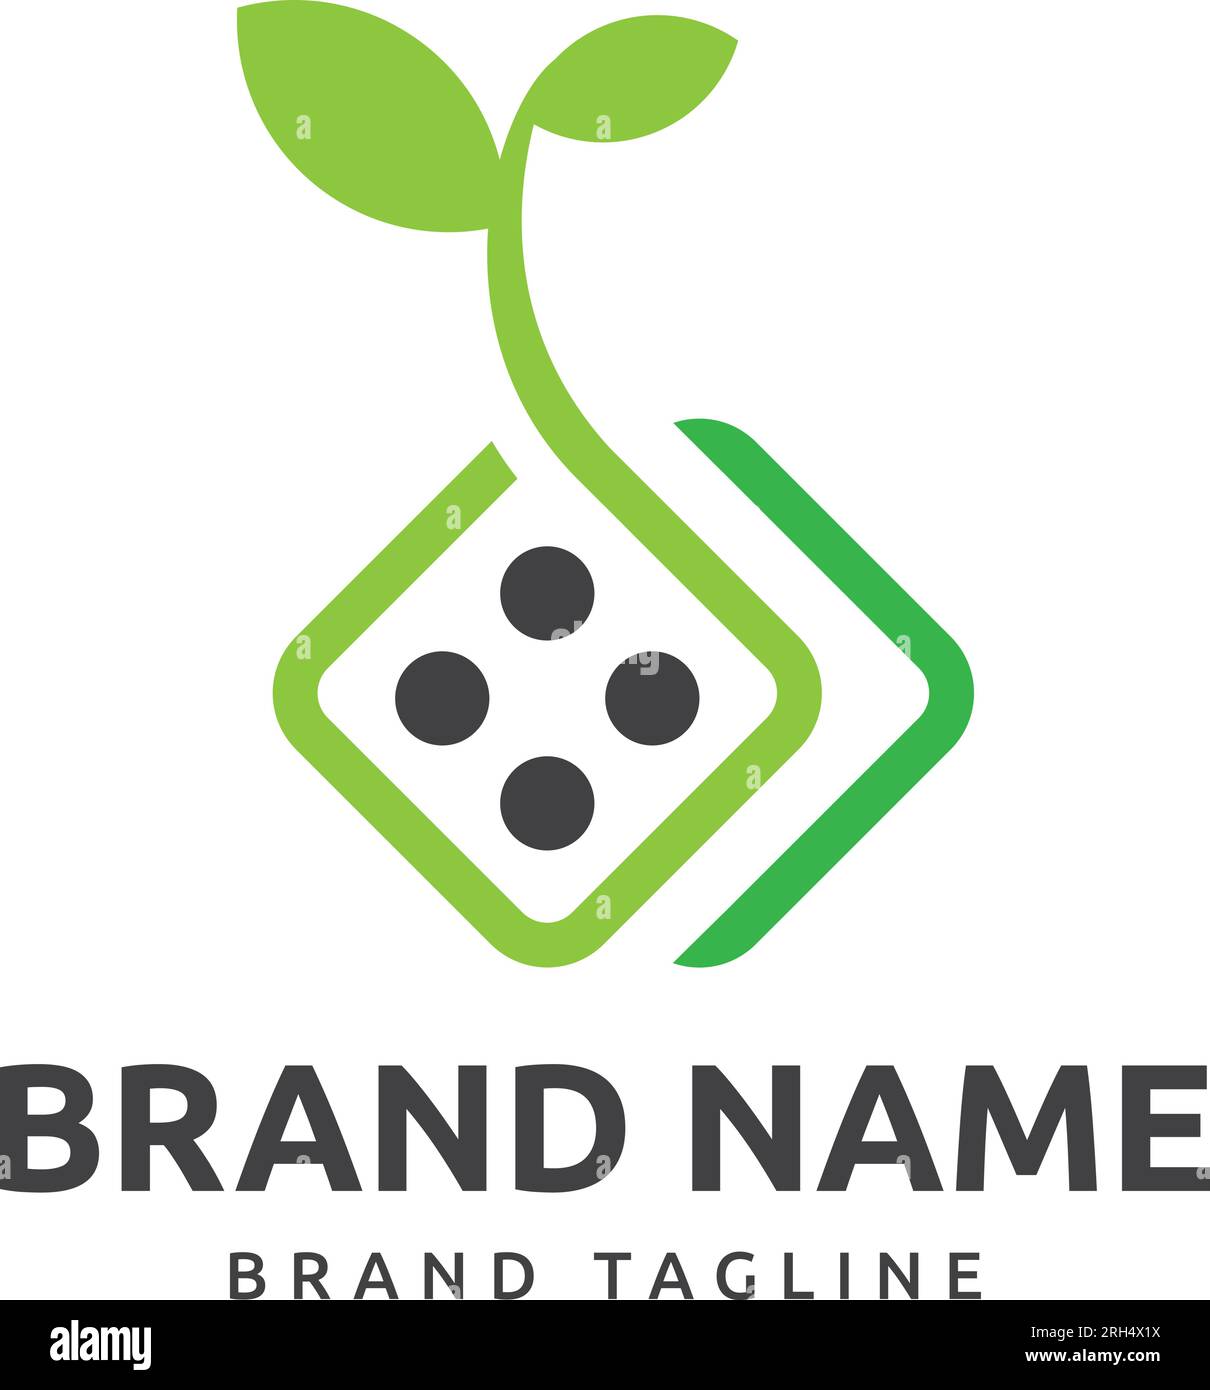 Würfelpflanze Logo. Kombiniertes Logo in Form eines Würfel- und Pflanzenlogos, Vorlage für das Würfelpflanzenlogo Stock Vektor